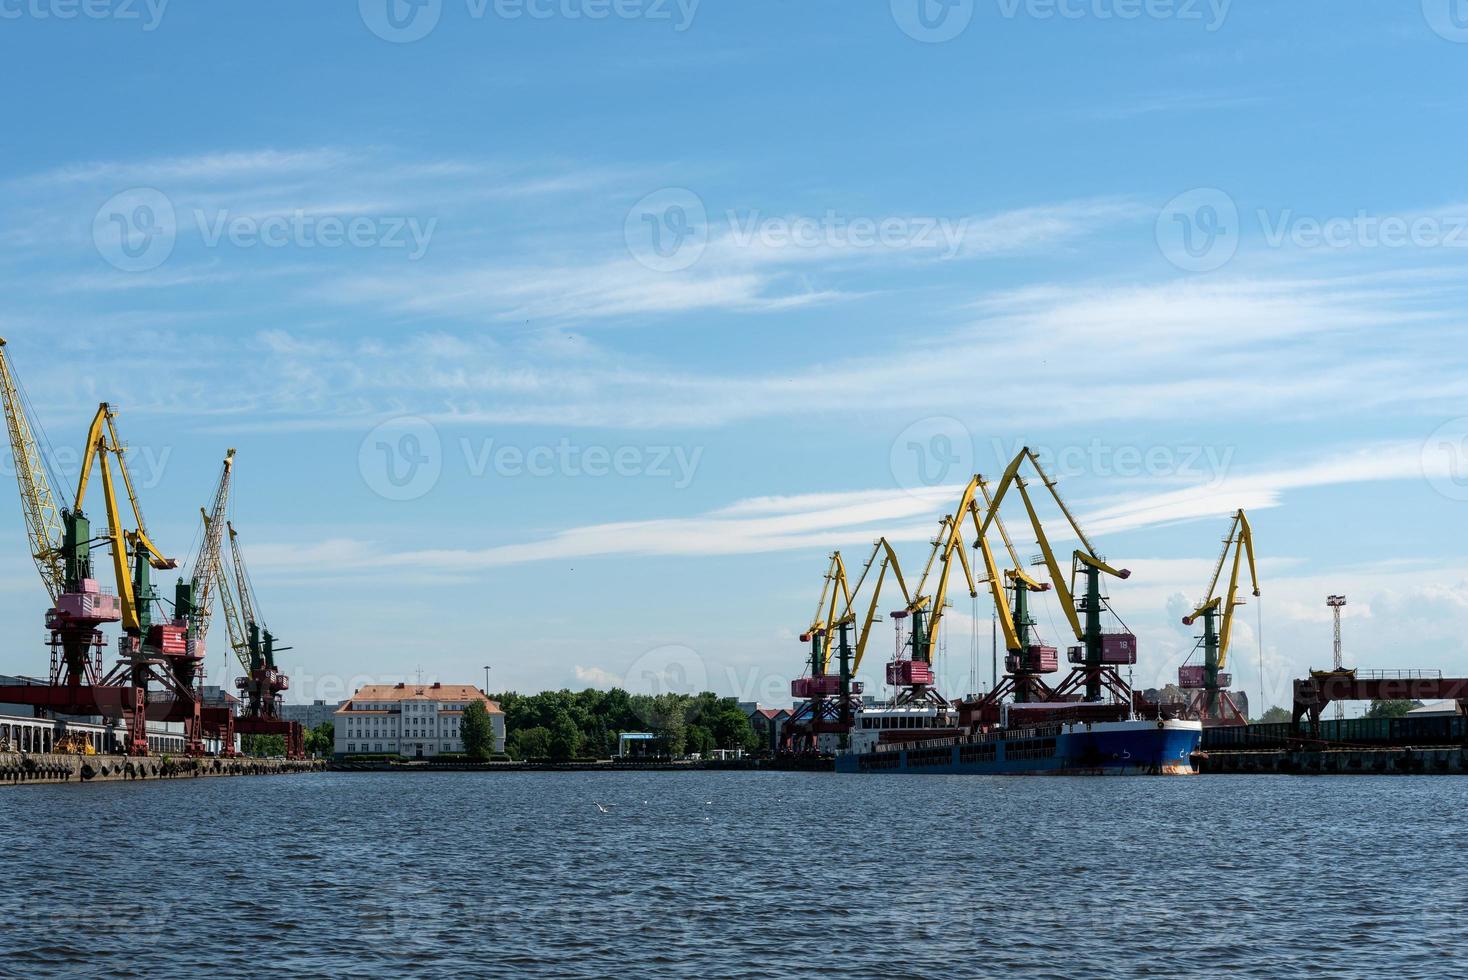 de nombreuses grues de chargement de grande taille se dressent sur les rives de la rivière venta. ventspils, lettonie, mer baltique. photo